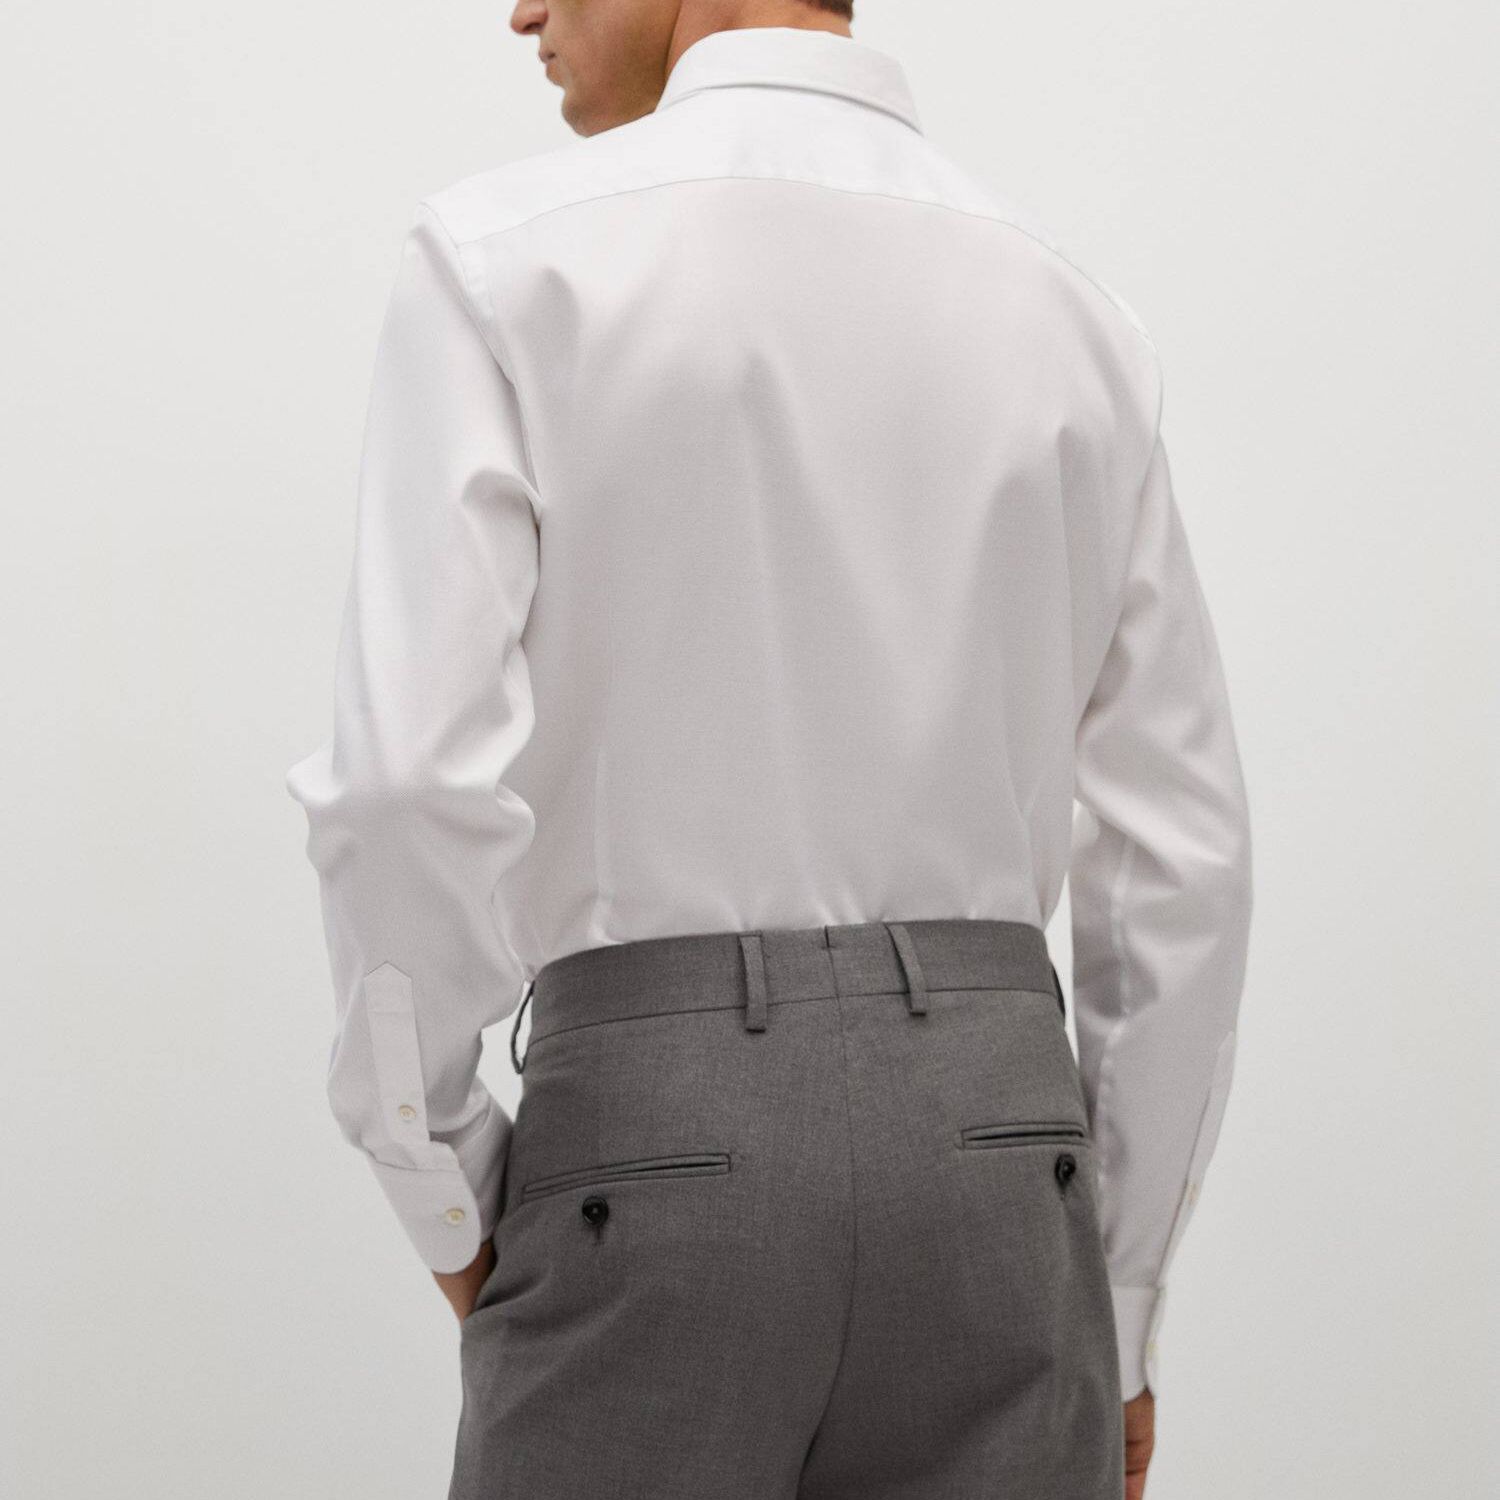 پیراهن آستین بلند مردانه مانگو مدل WT613MAR -  - 3